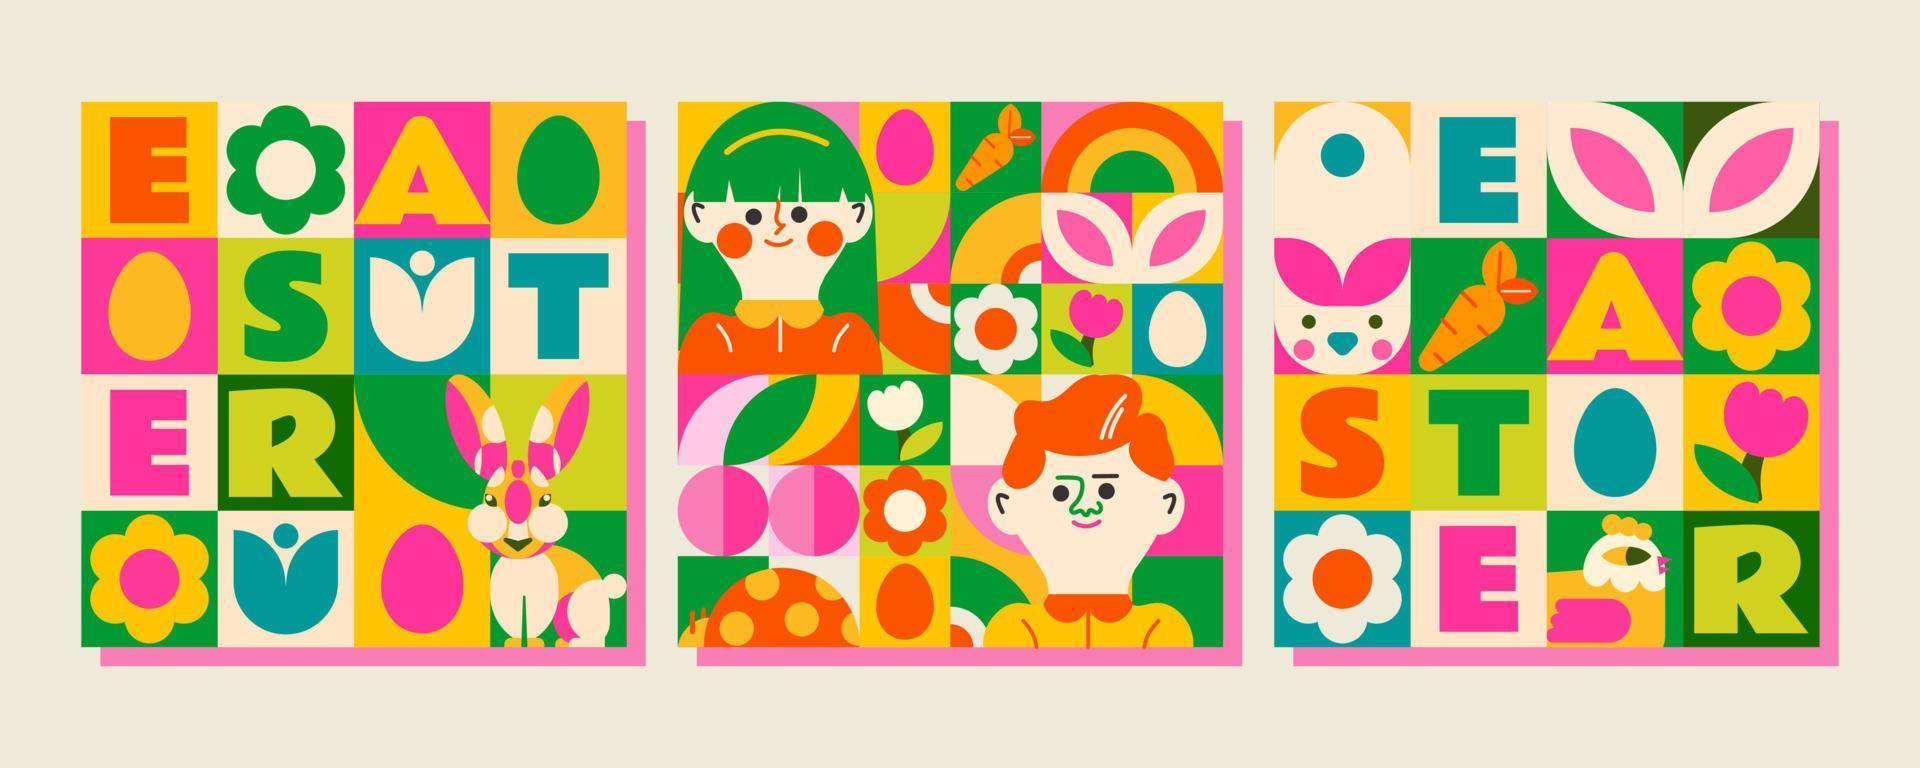 3 patronen in mozaïek- stijl voor een gelukkig Pasen dag. helder, voorjaar ontwerp met mensen, konijnen, bloemen, Pasen eieren en veel elementen dat creëren een feestelijk humeur en de aankomst van een warm voorjaar vector